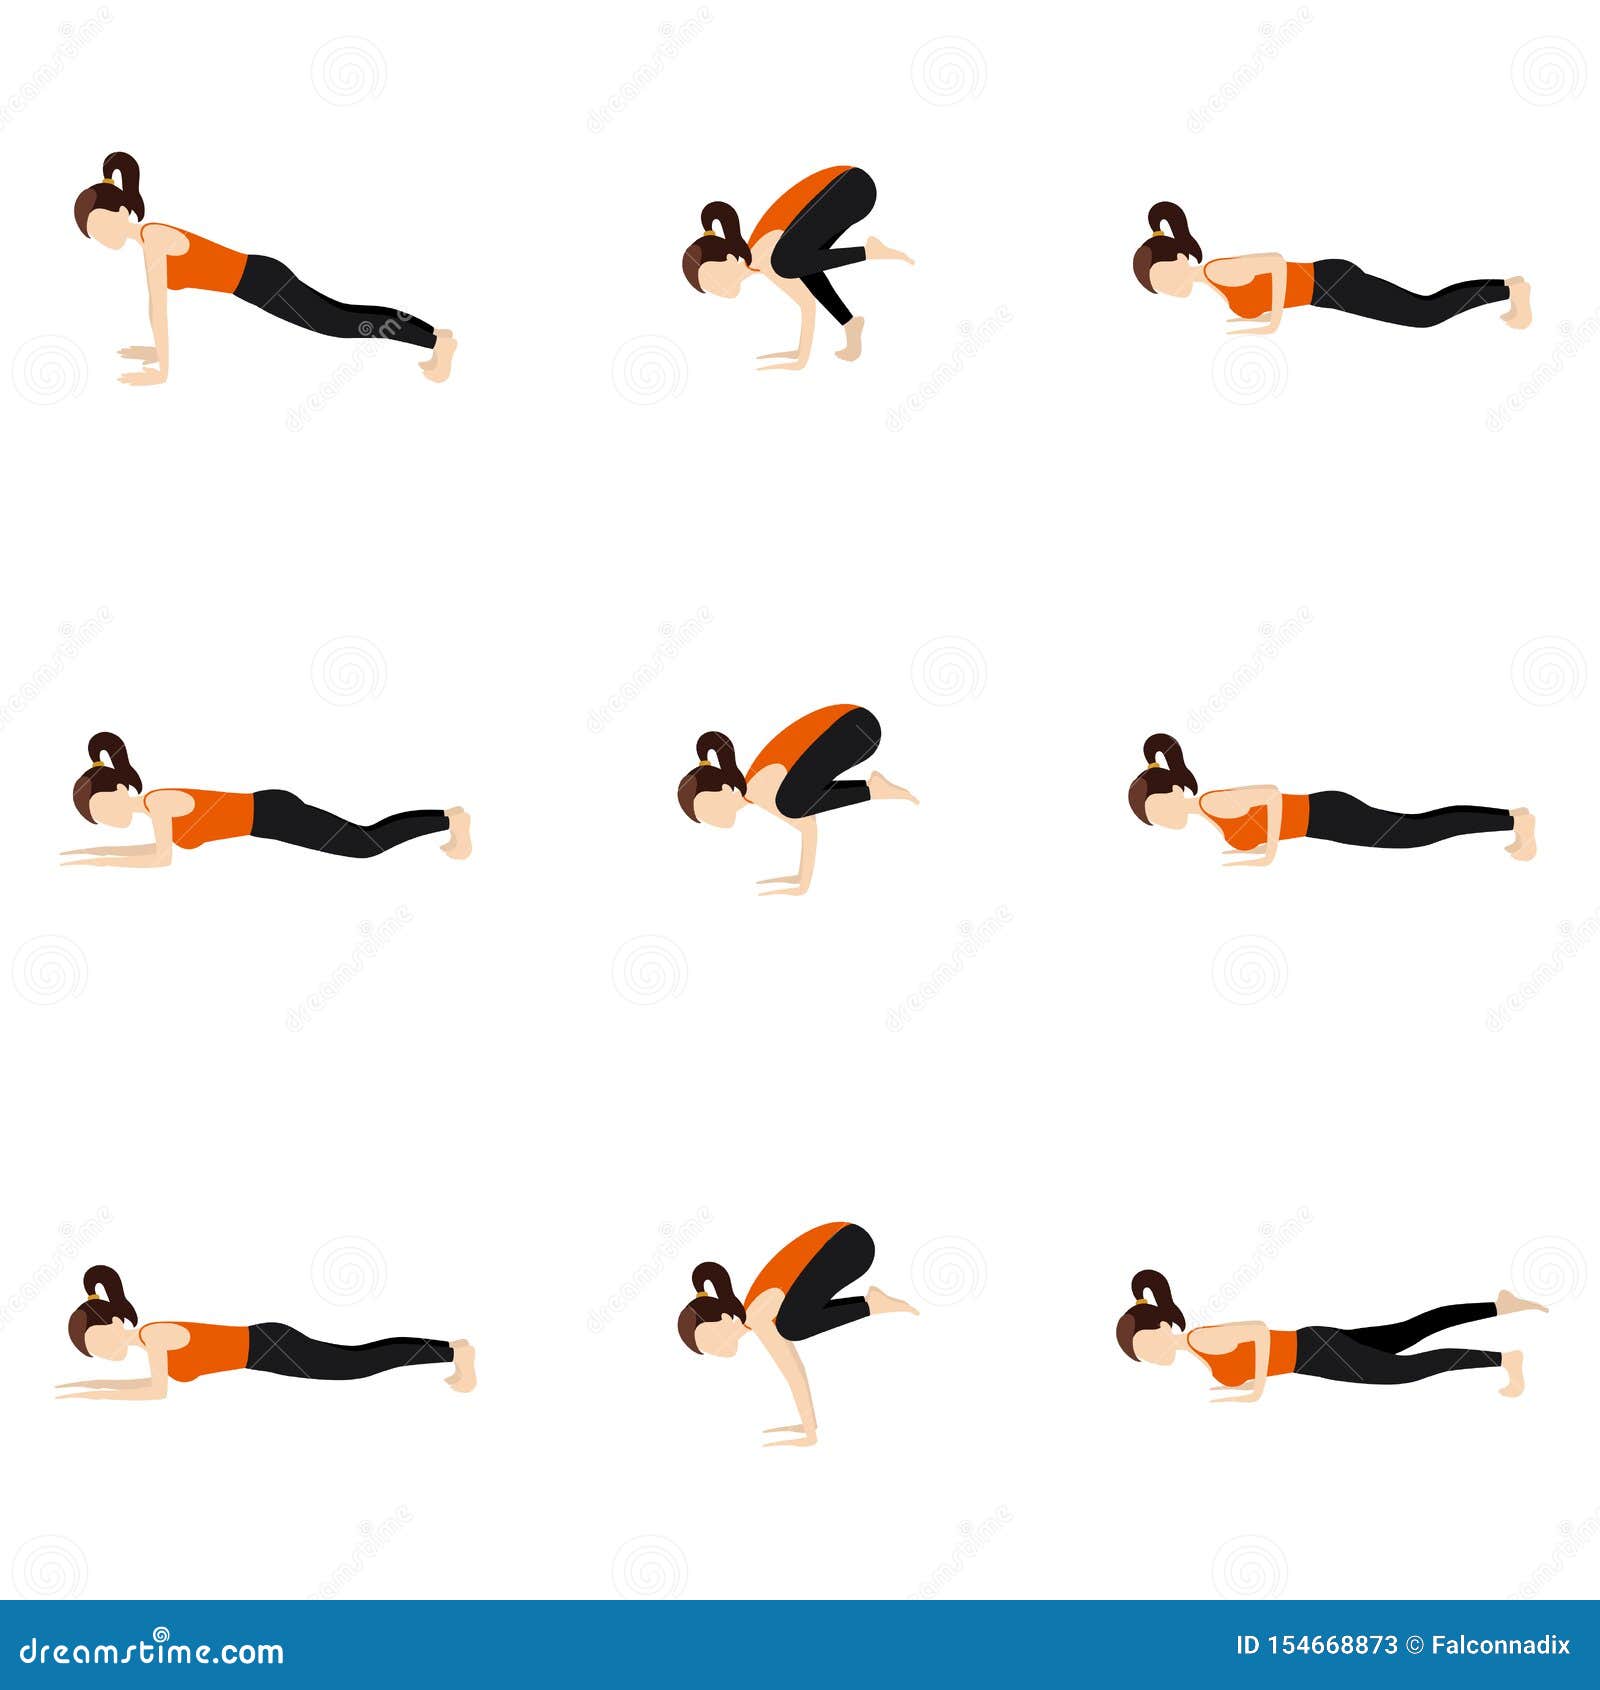 4 essentials for arm balances - Ekhart Yoga